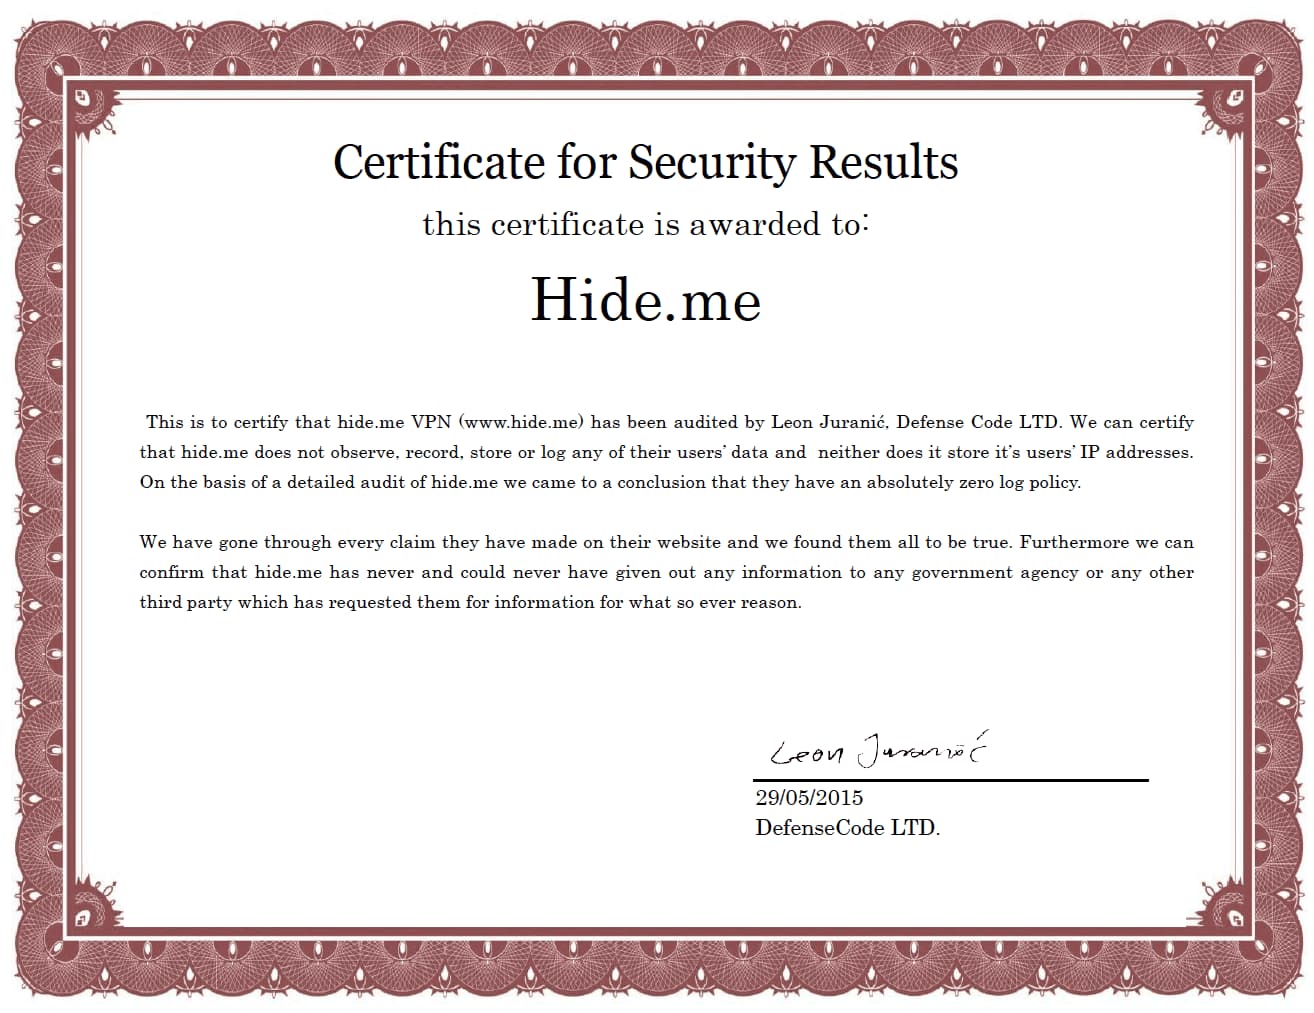 Le certificat d'audit de Hide.me décerné par DefenseCode Ltd